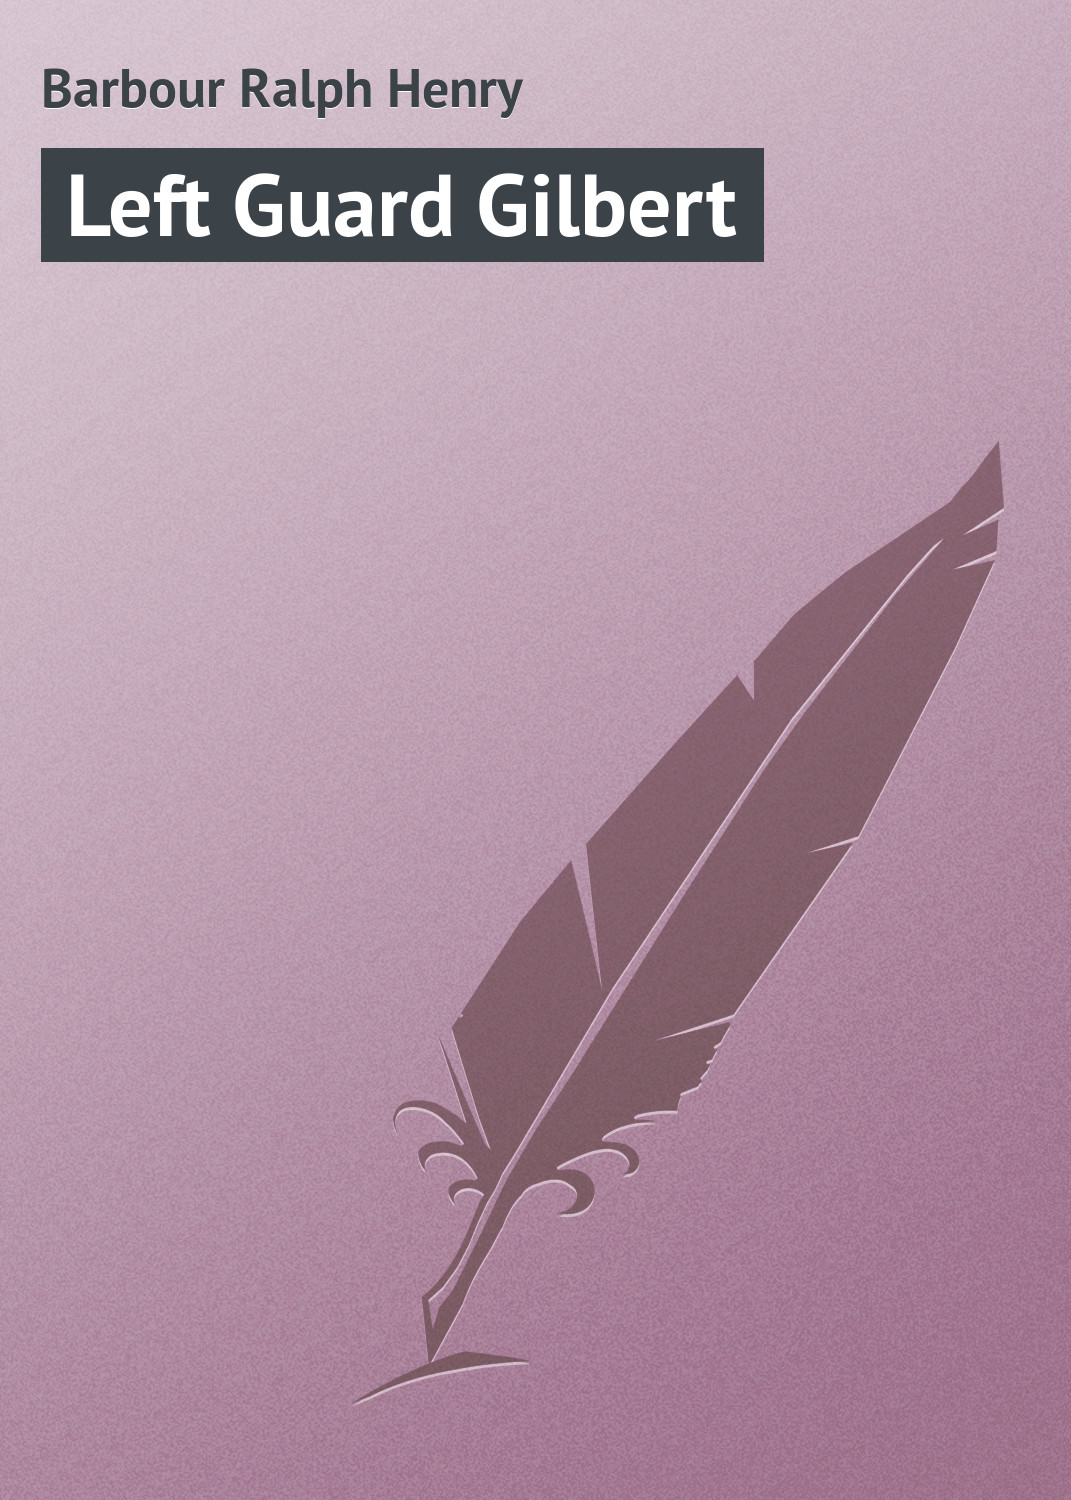 Книга Left Guard Gilbert из серии , созданная Ralph Barbour, может относится к жанру Зарубежная классика, Зарубежные детские книги, Иностранные языки. Стоимость электронной книги Left Guard Gilbert с идентификатором 23157939 составляет 5.99 руб.